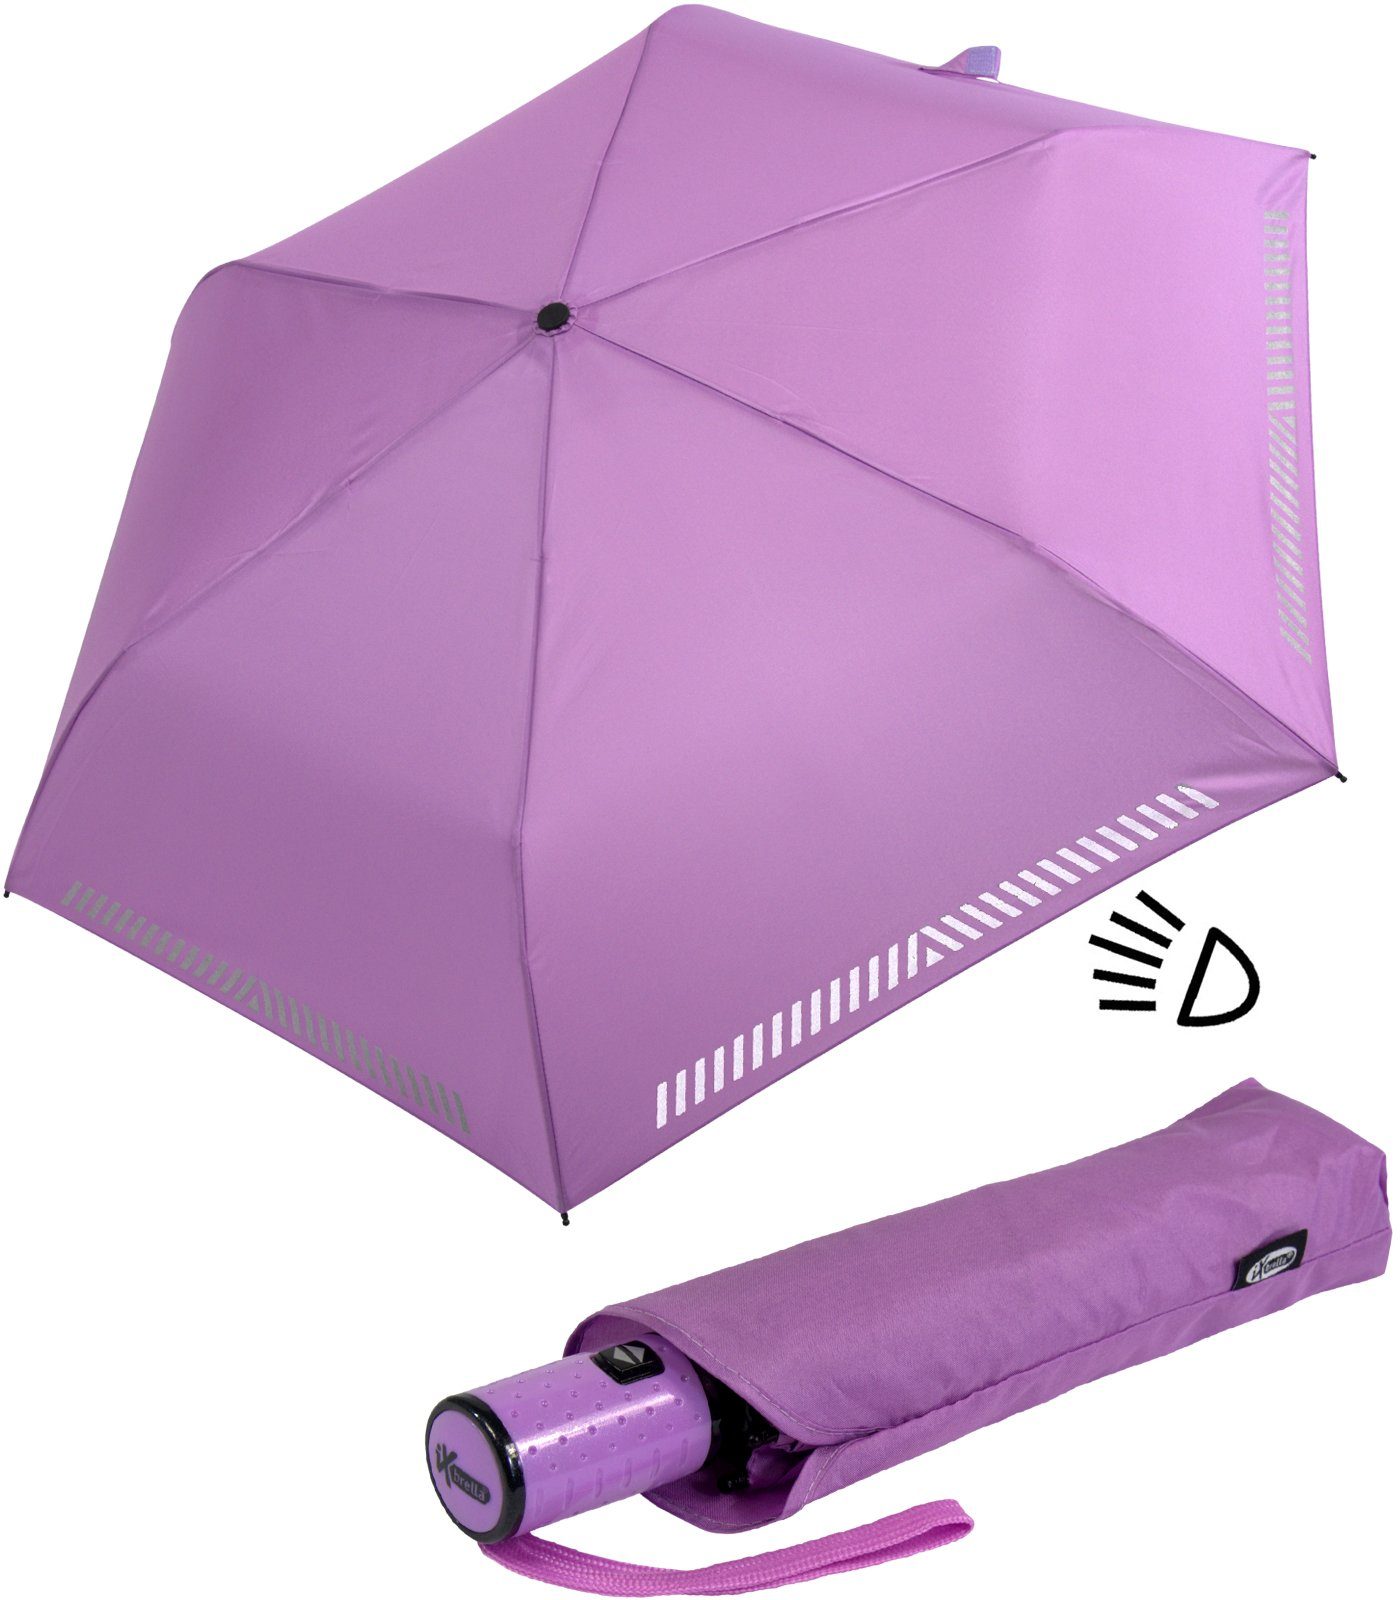 Dringender Sonderverkauf iX-brella Taschenregenschirm Kinderschirm reflektierend, durch Reflex-Streifen mit Auf-Zu-Automatik, - hell-lila Sicherheit